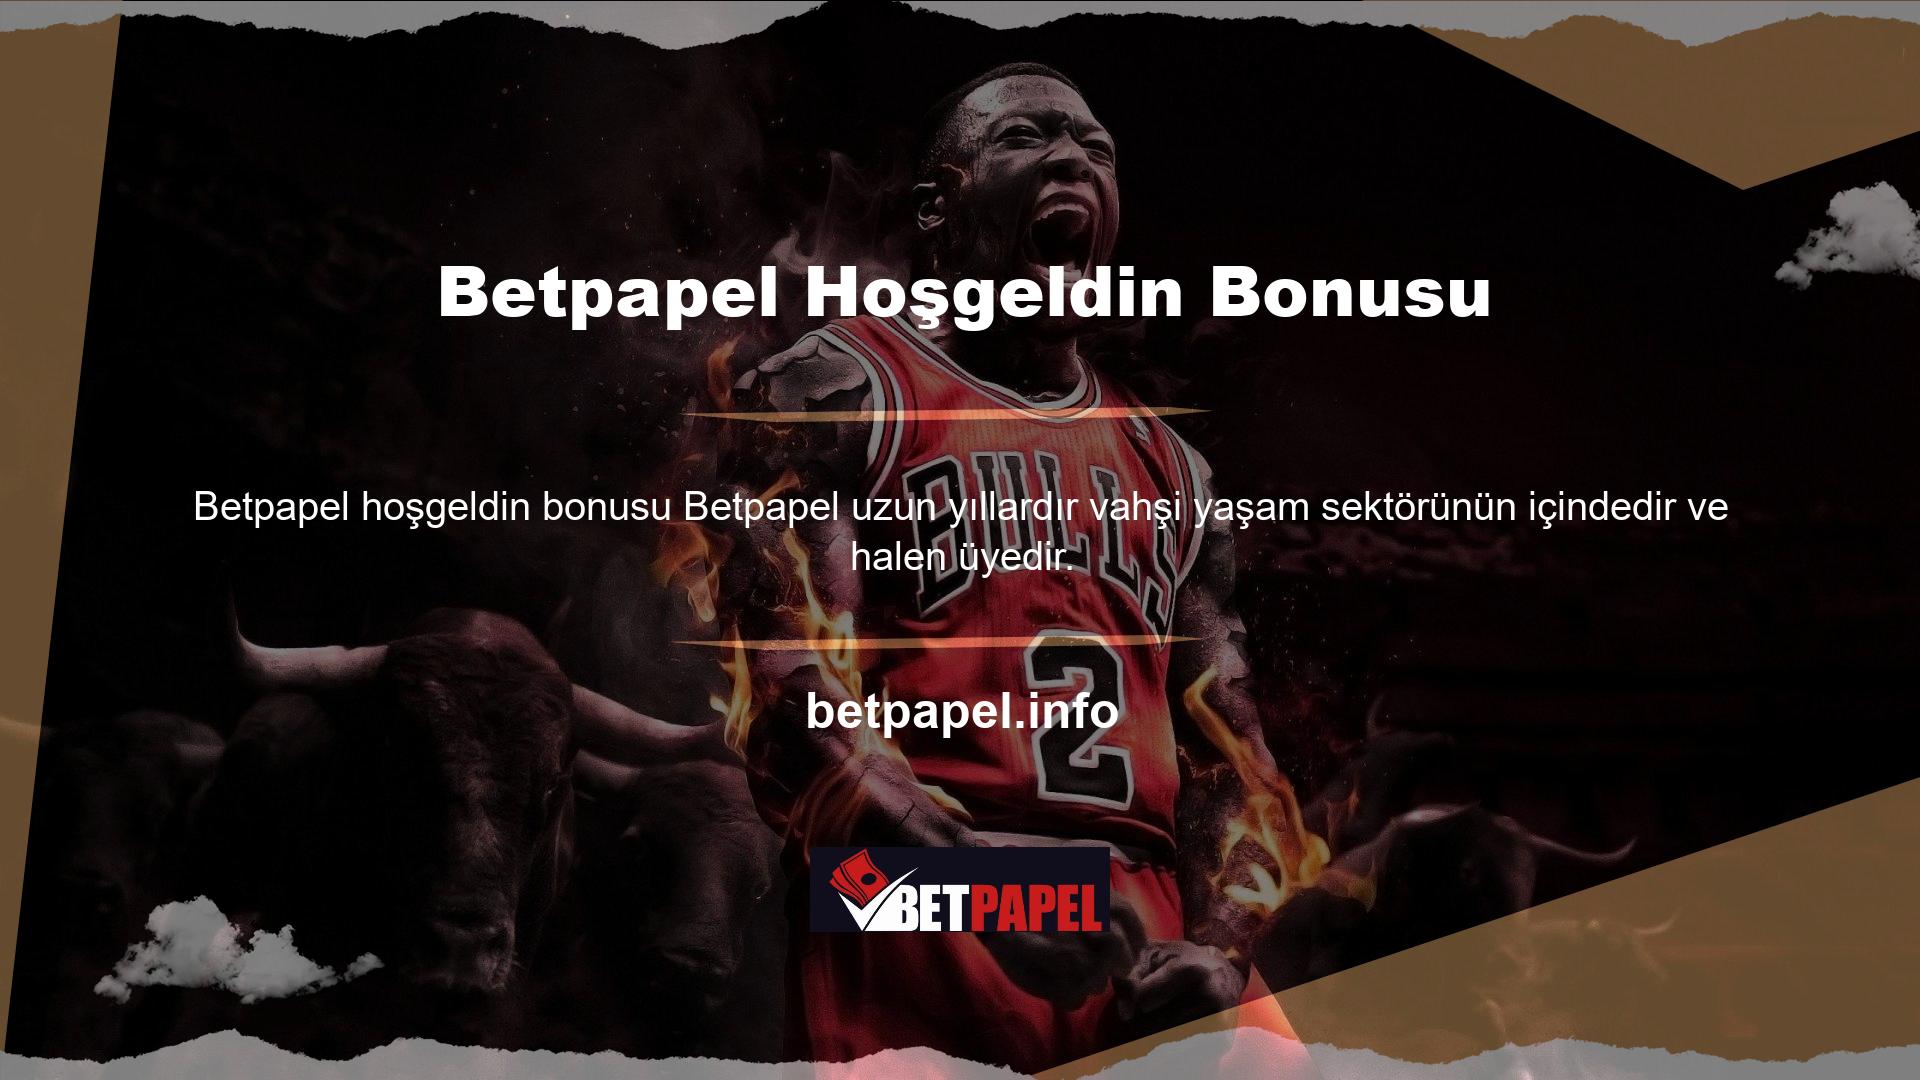 Betpapel Oyun Sitesi Şirketi popüler etkinliklere ev sahipliği yapmaya ve mevcut üyeler için fırsatlar sunmaya devam ediyor